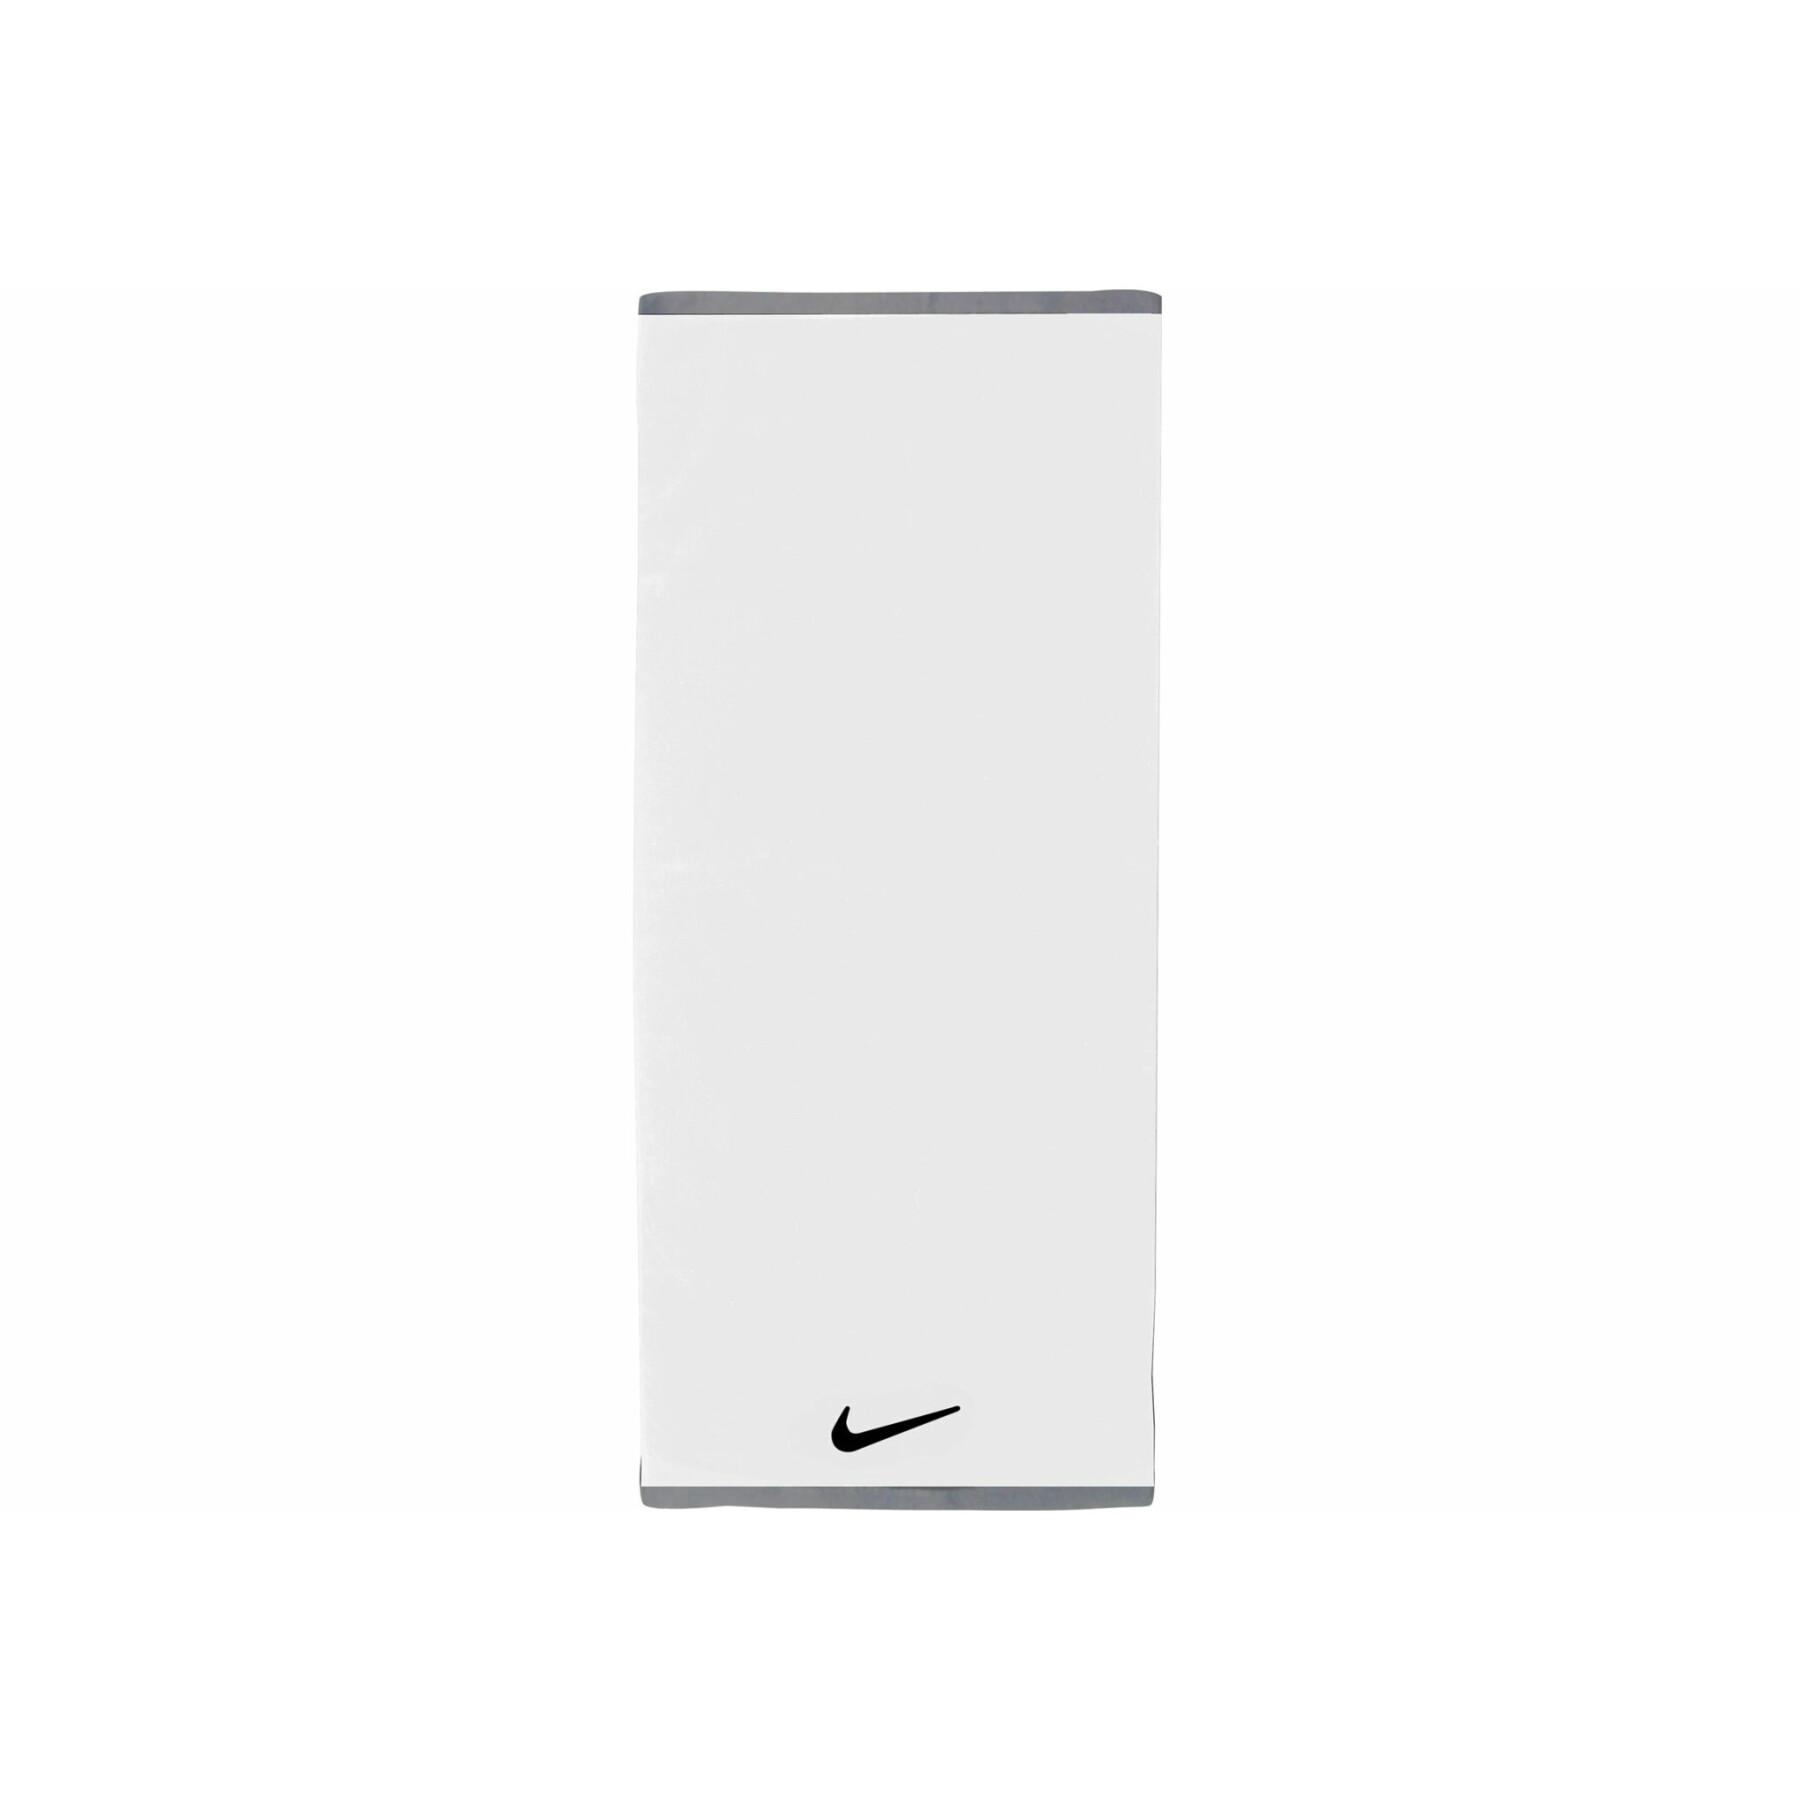 Handtuch Nike fundamental L